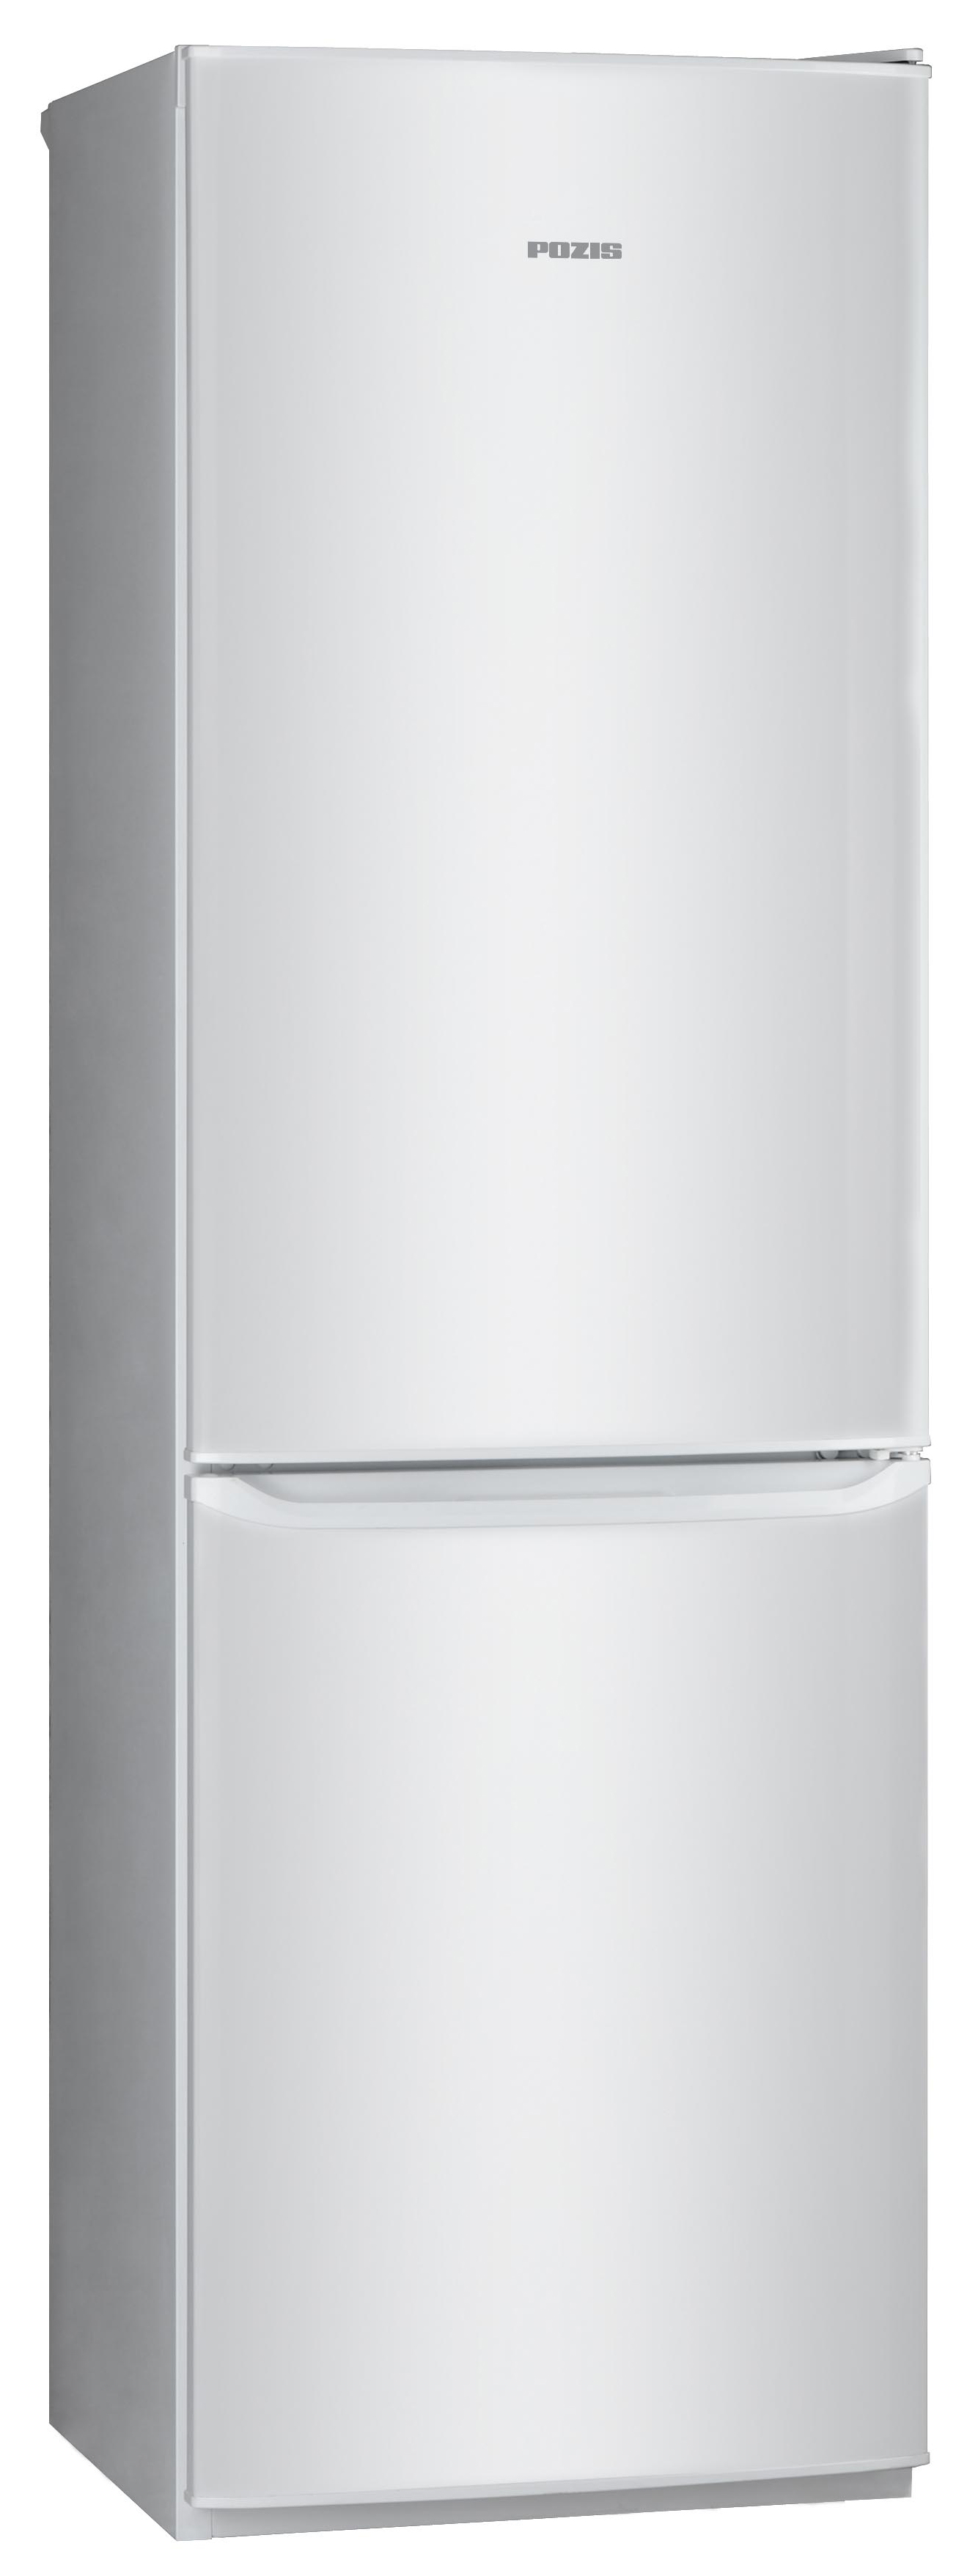 Холодильник POZIS RD-149 серебристый холодильник pozis rk fnf 170